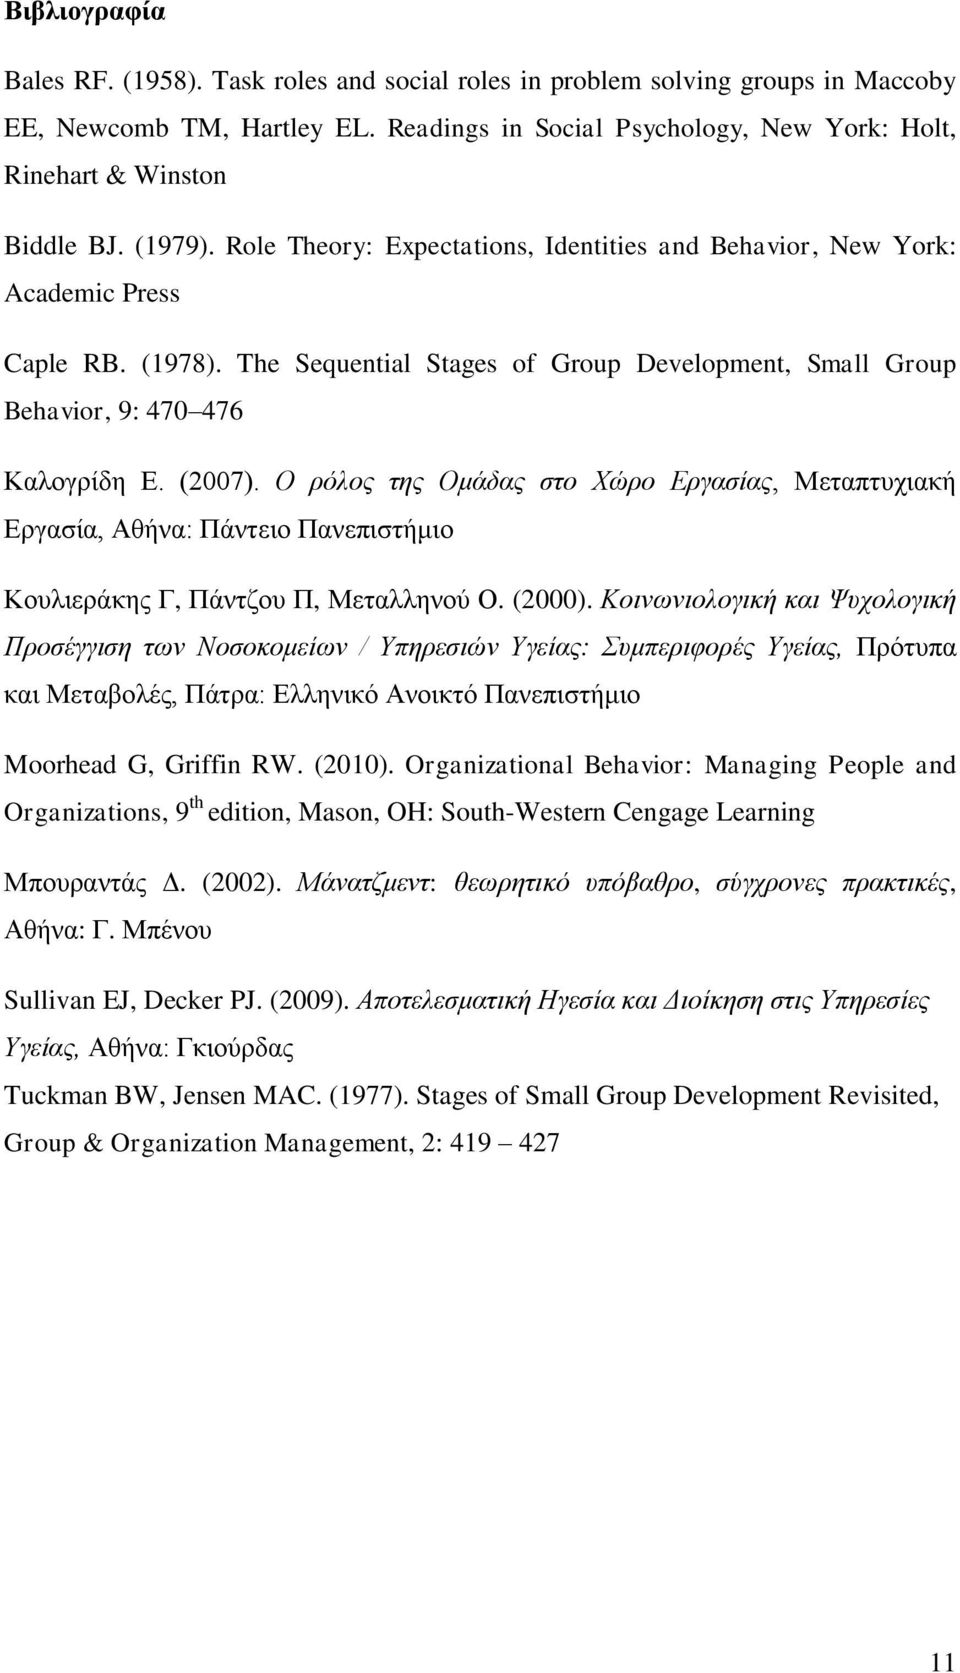 Ο ρόλος της Ομάδας στο Χώρο Εργασίας, Μεταπτυχιακή Εργασία, Αθήνα: Πάντειο Πανεπιστήμιο Κουλιεράκης Γ, Πάντζου Π, Μεταλληνού Ο. (2000).